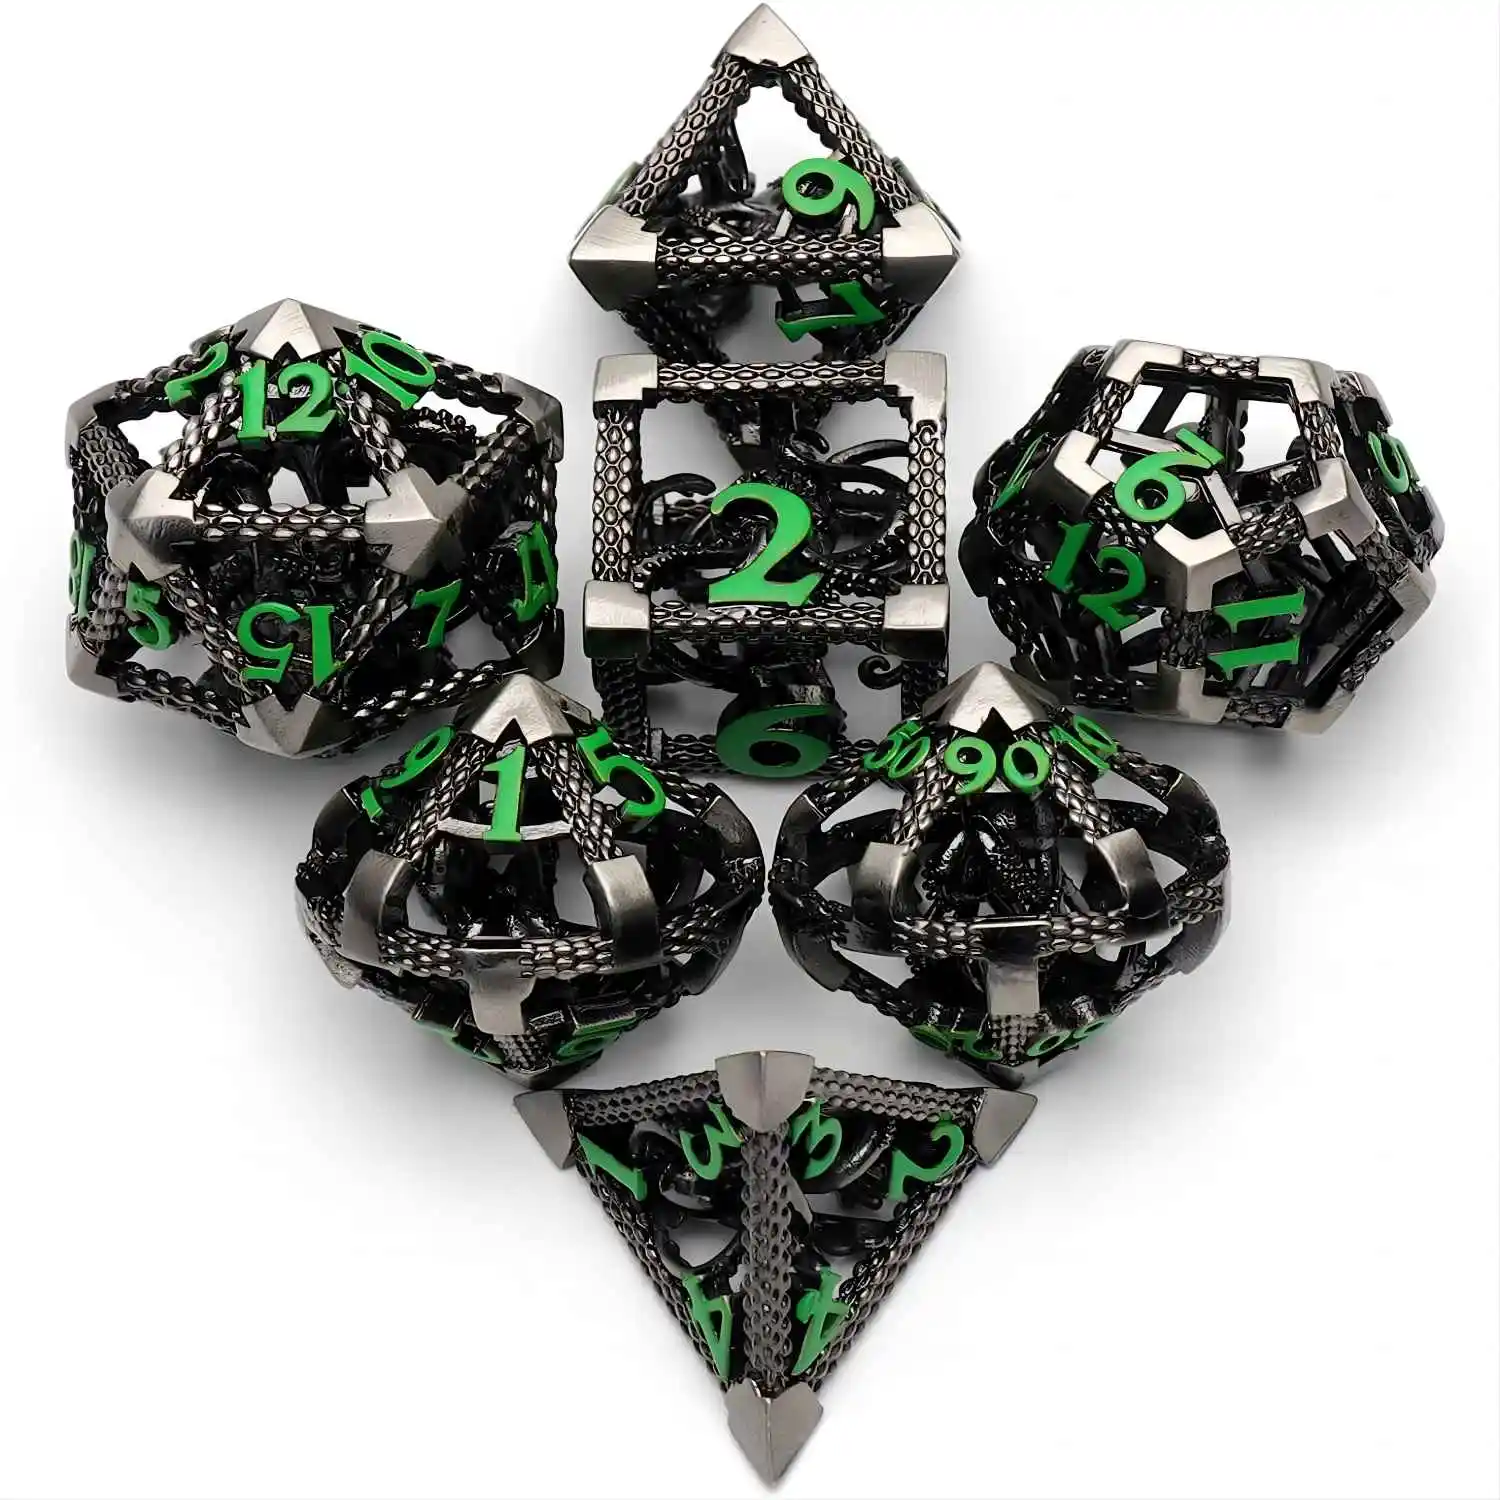 

Игральные кости DND набор ролевых игр Cthulhu набор игральных костей для MTG ролевой игры Pathfinder настольная игра-Античный Серебристый зеленый